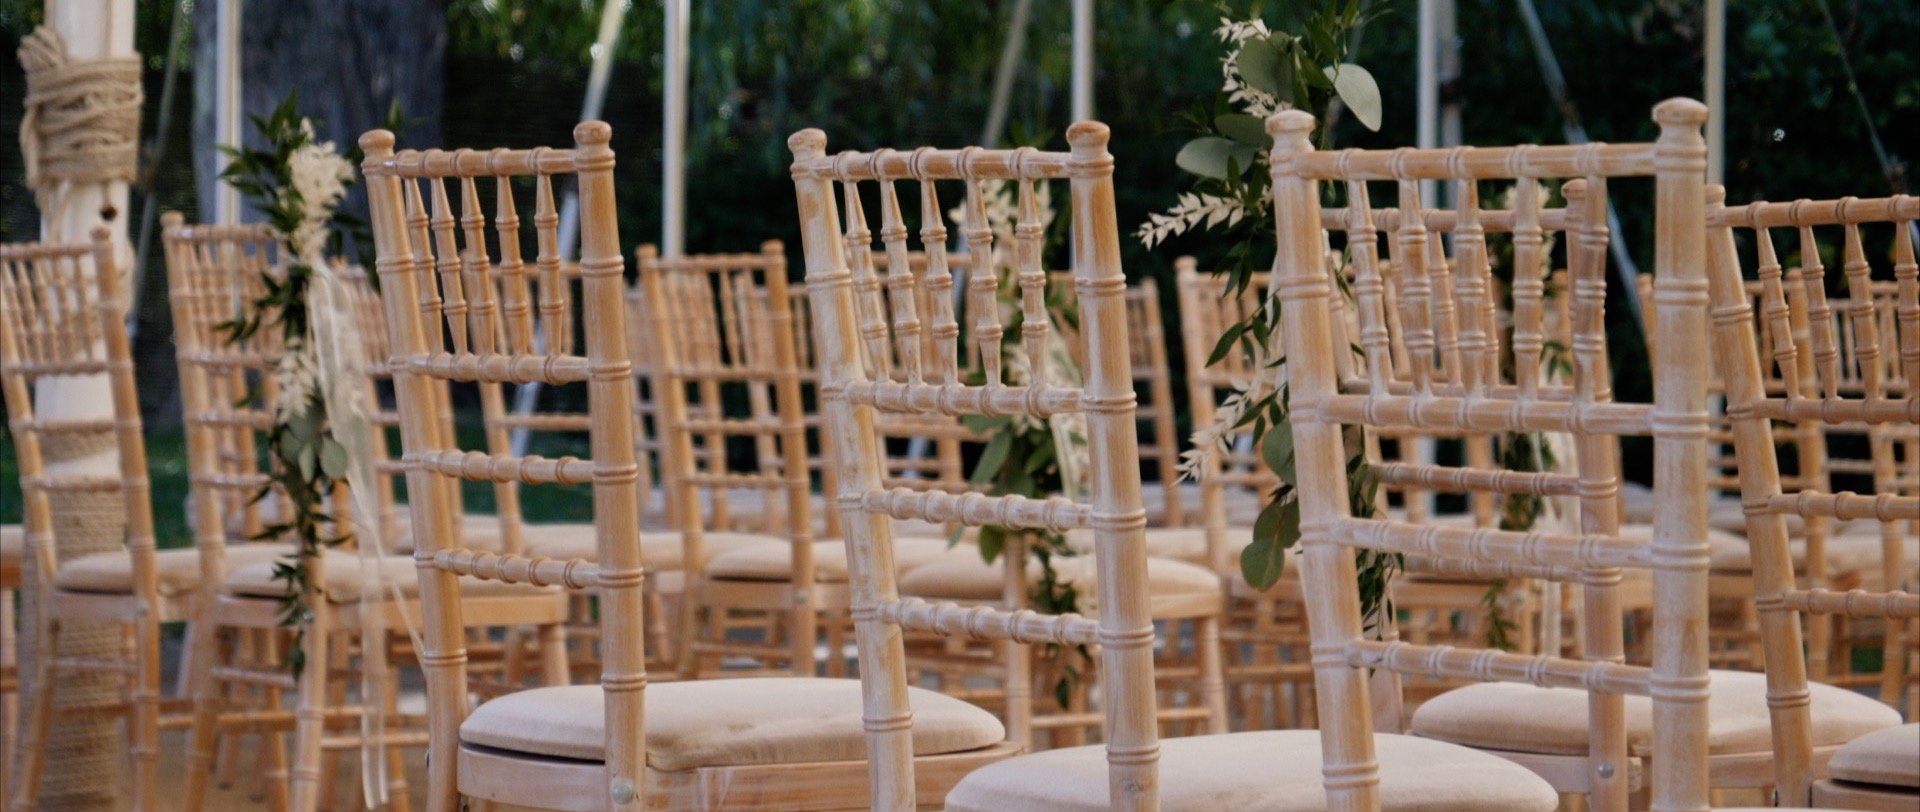 Wedding ceremony chairs at Houchins wedding venue Essex.jpg